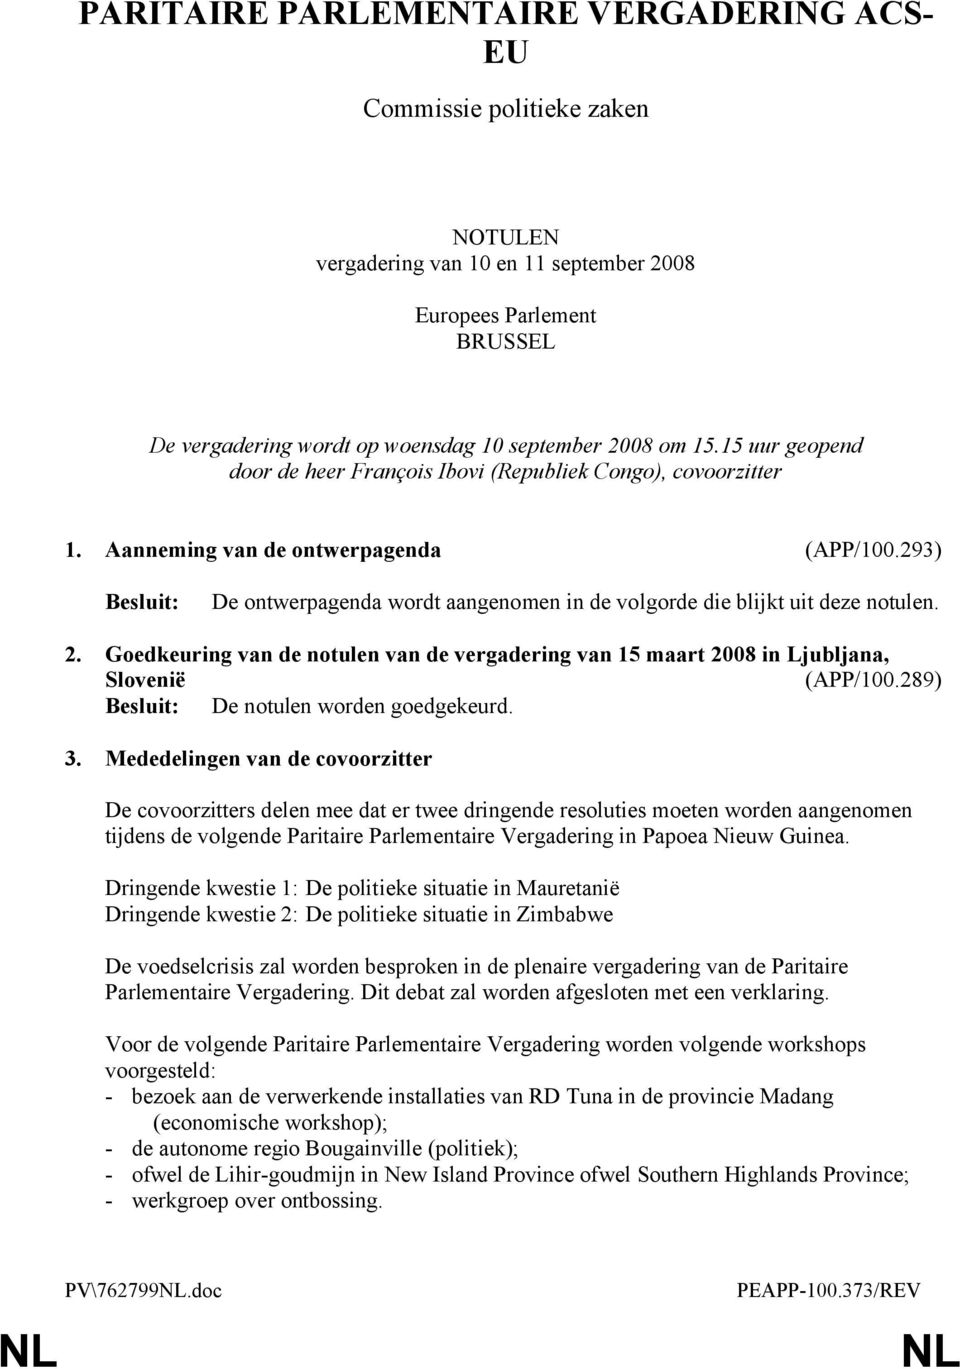 293) De ontwerpagenda wordt aangenomen in de volgorde die blijkt uit deze notulen. 2. Goedkeuring van de notulen van de vergadering van 15 maart 2008 in Ljubljana, Slovenië (APP/100.